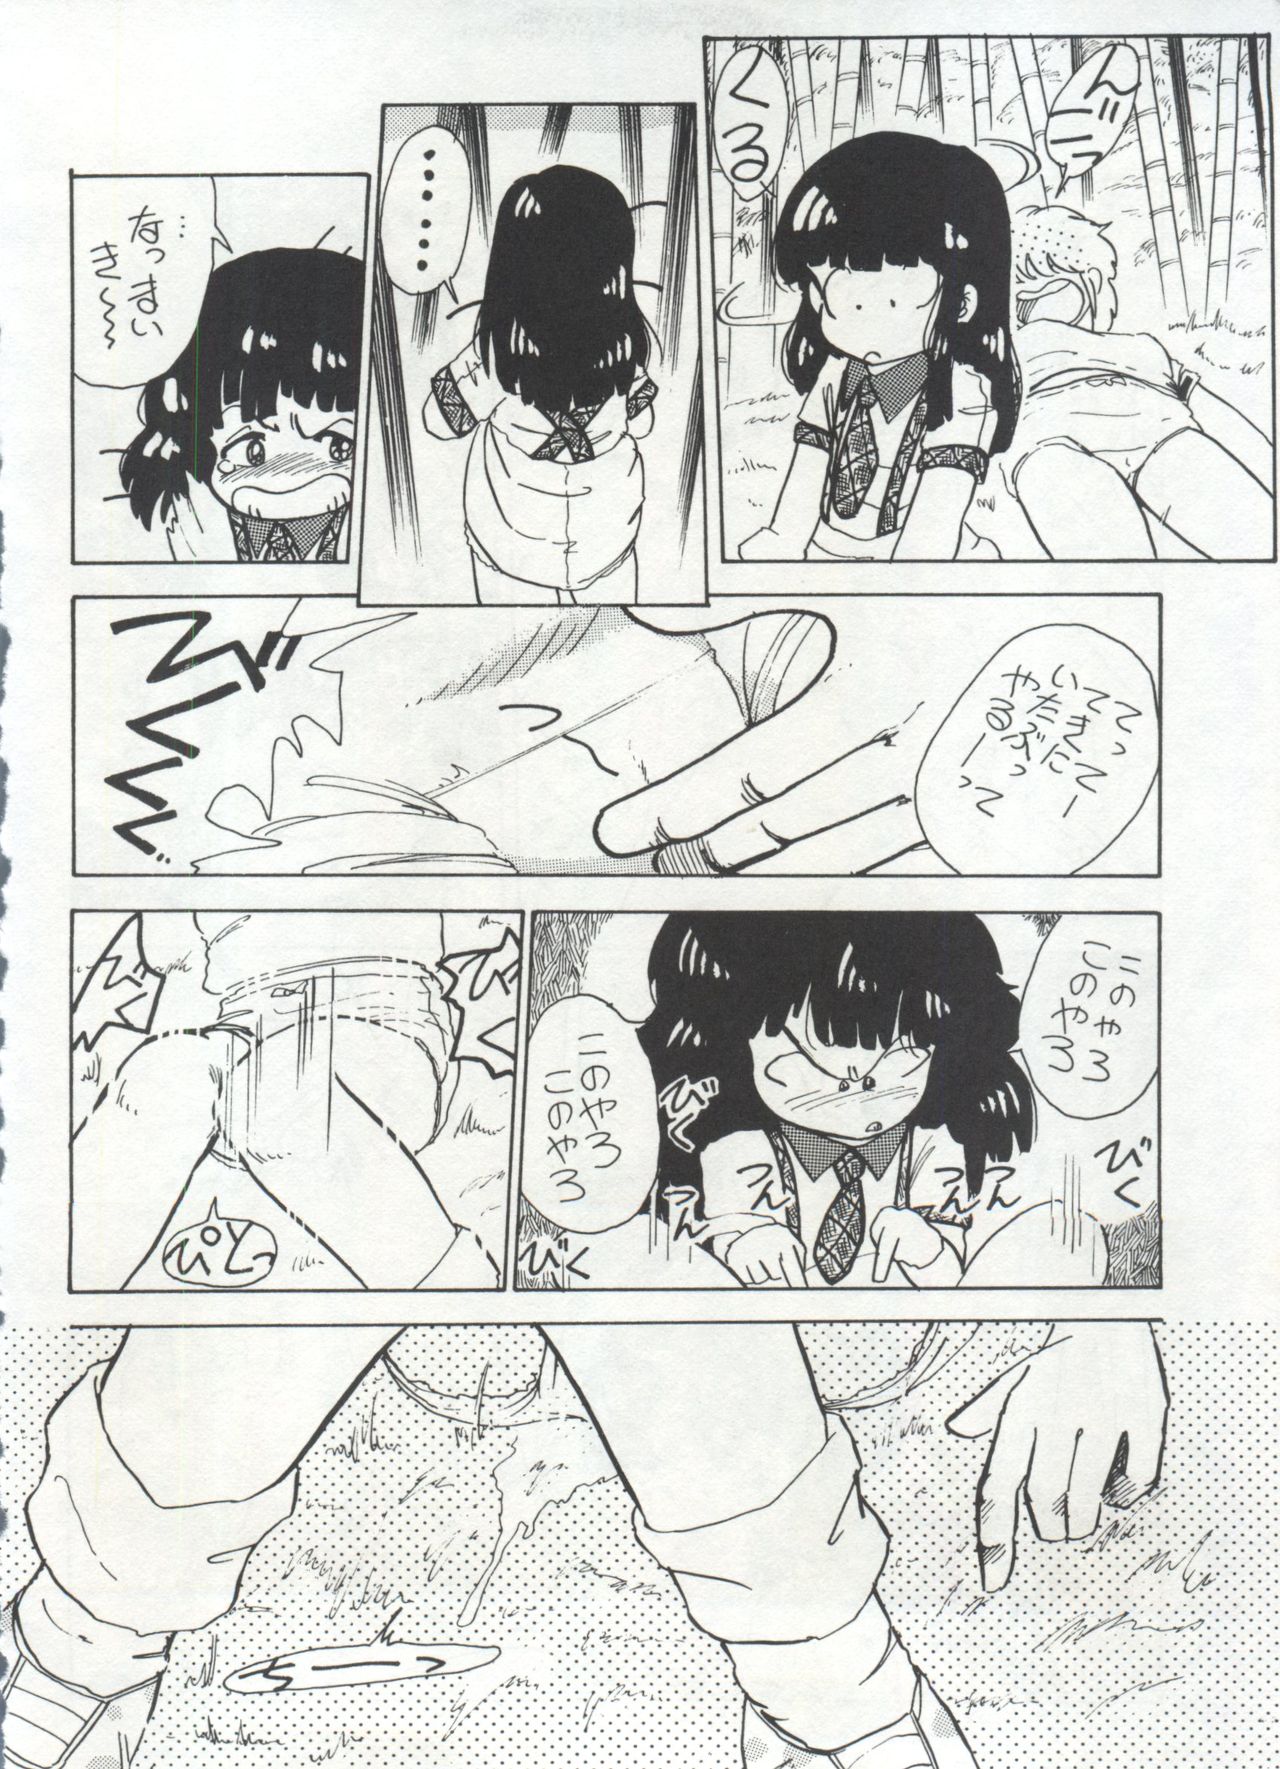 [Anthology] Bishoujo Shoukougun 1 Lolita Syndrome (Various) page 25 full